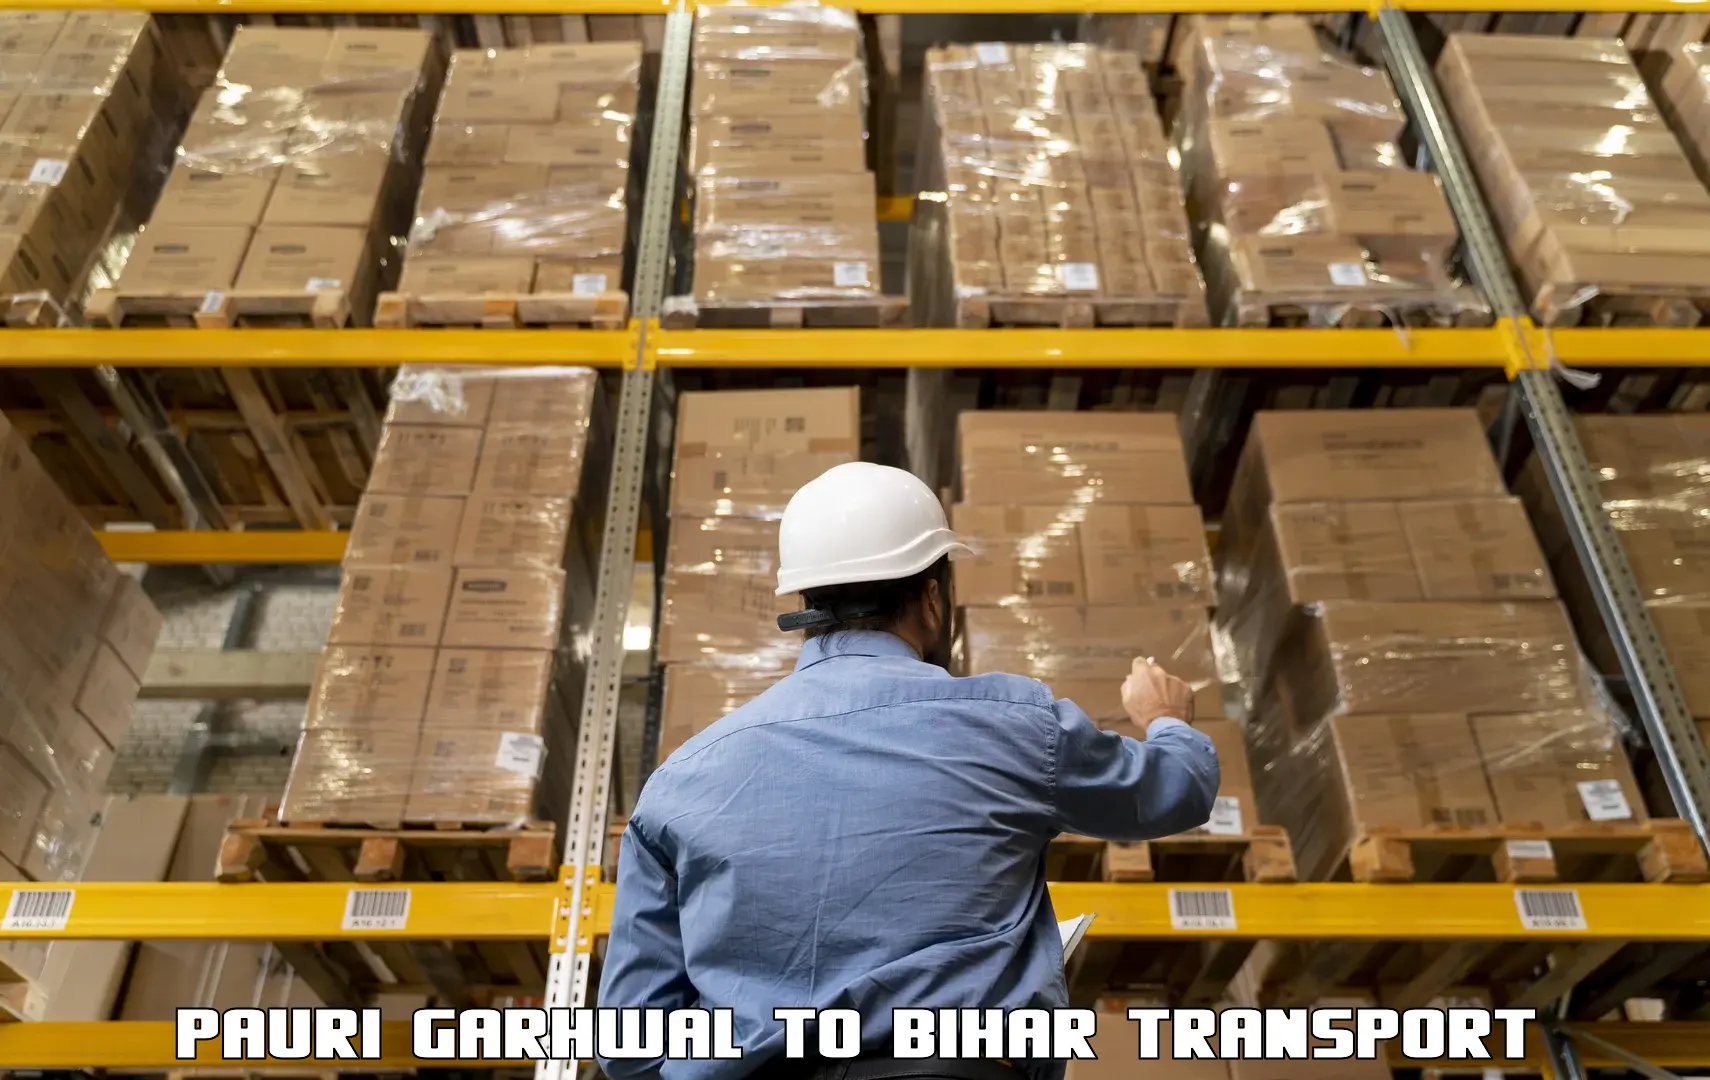 Furniture transport service Pauri Garhwal to Mashrakh